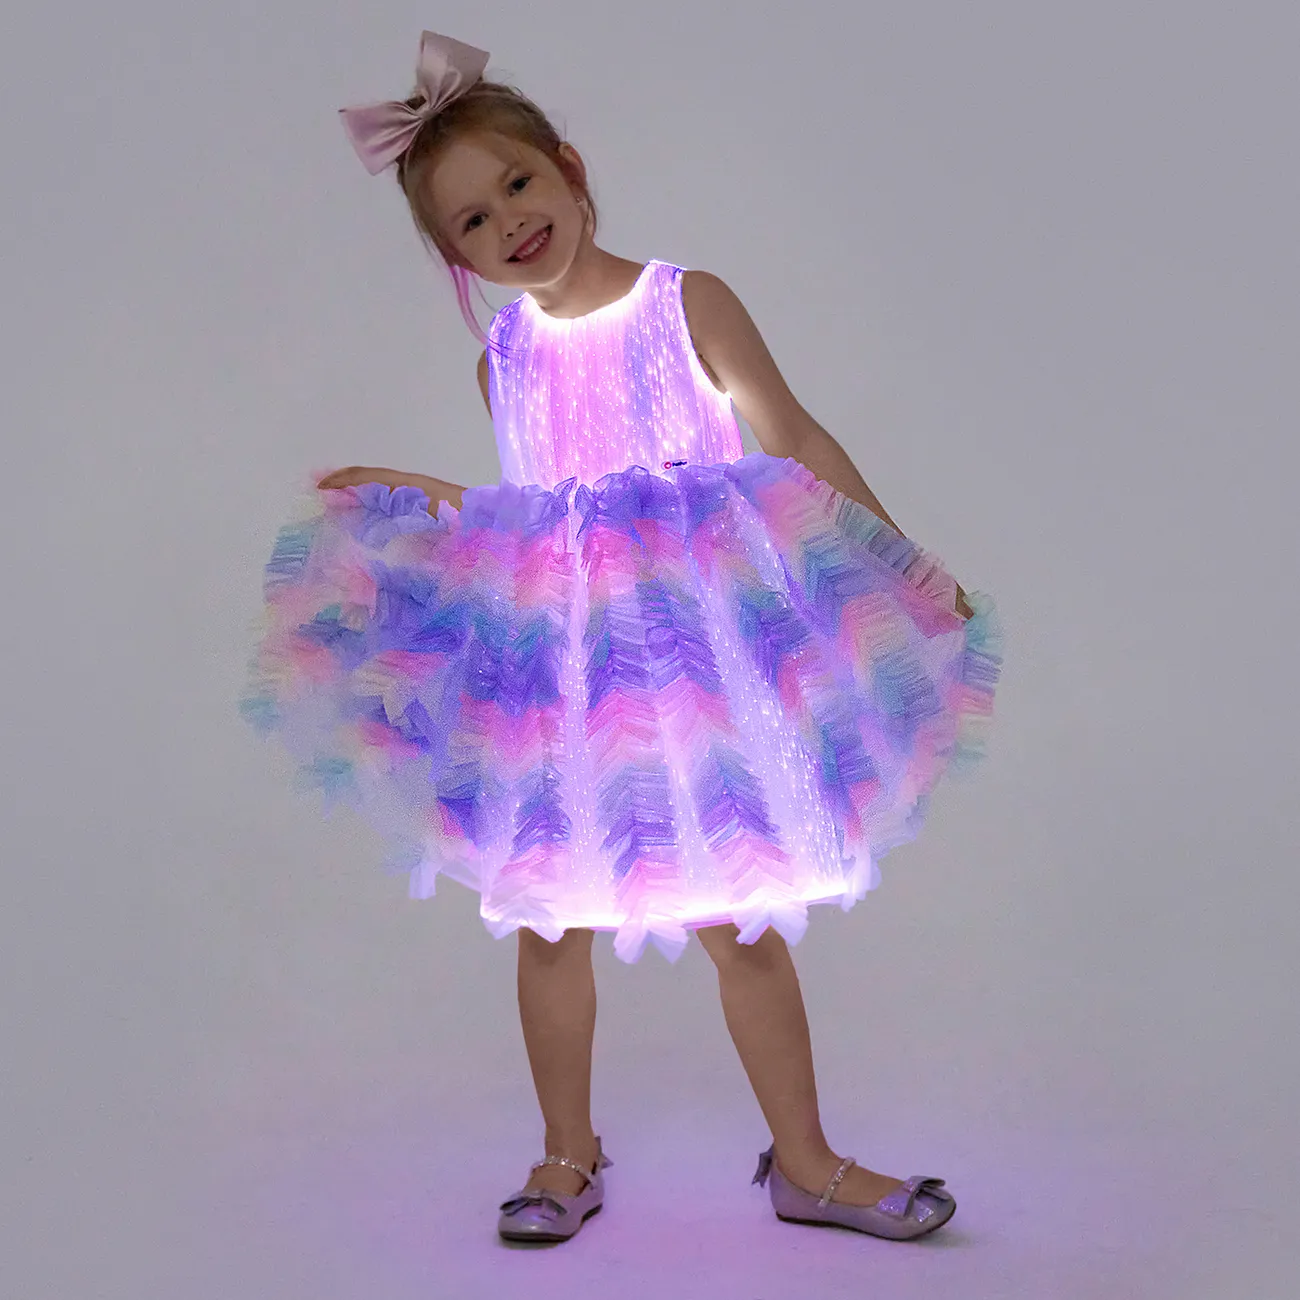 Go-Glow Light Up vestido de festa de princesa colorido com saia de babados, incluindo controlador (bateria embutida) Multicolorido big image 1